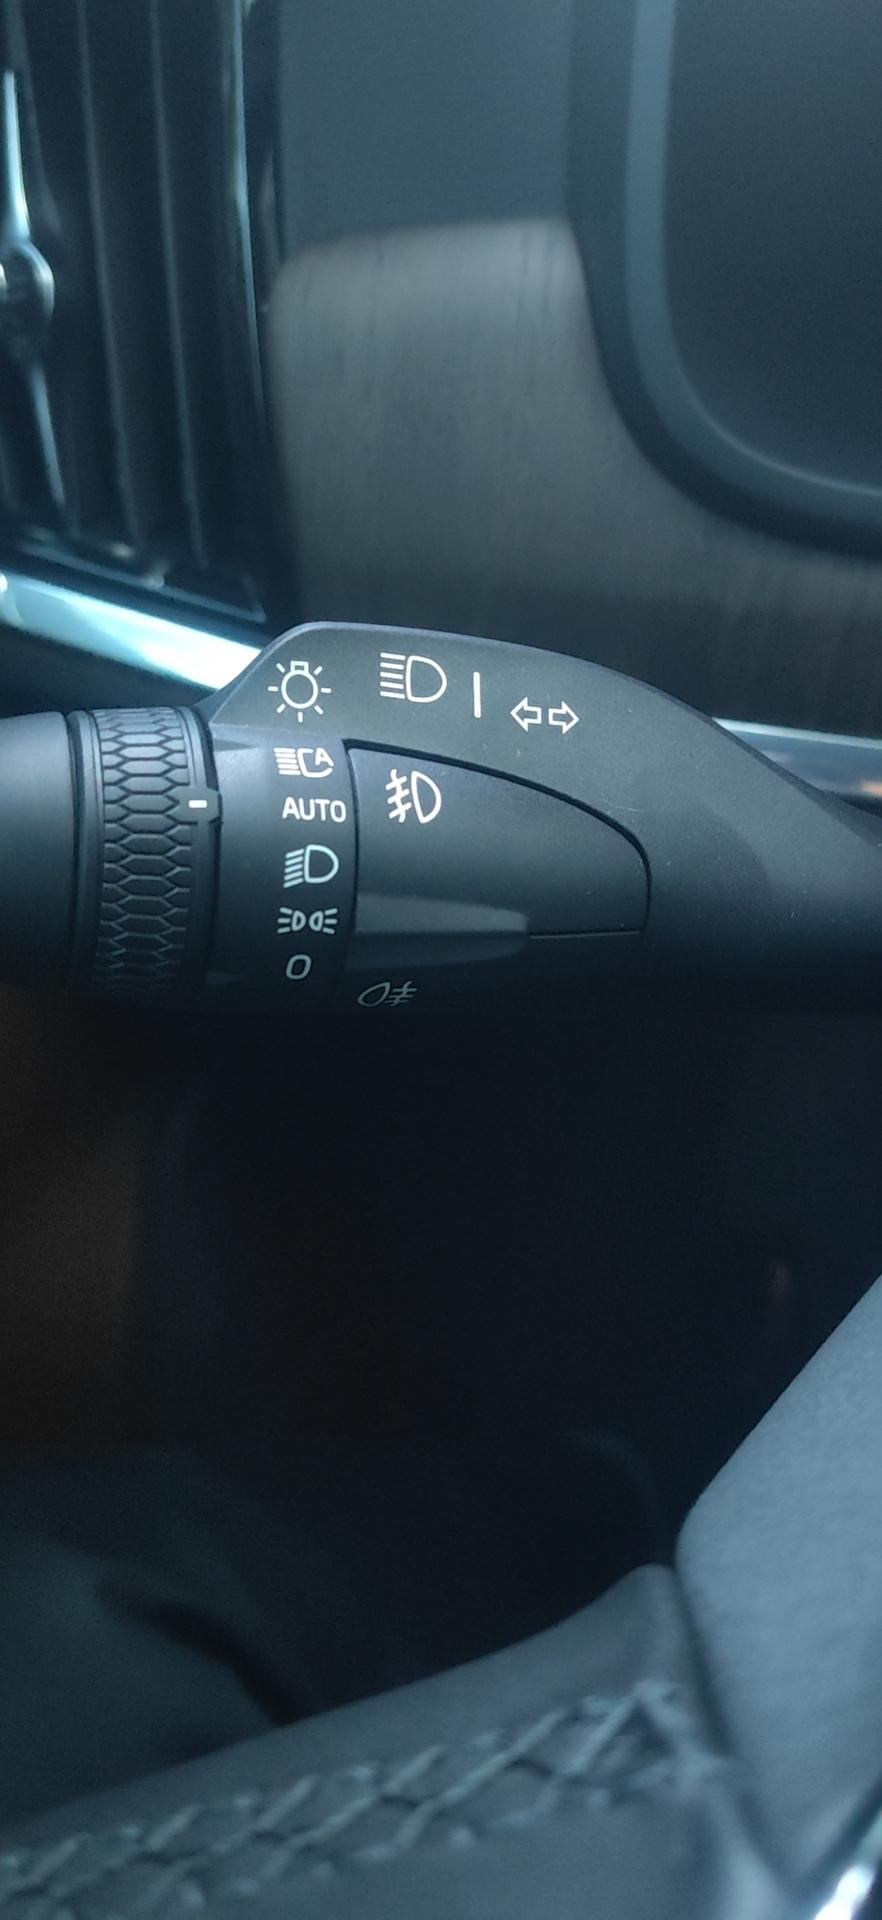 沃尔沃S90 铁子们，s90白天自动大灯开到auto位置，后示廓灯也亮的吗。